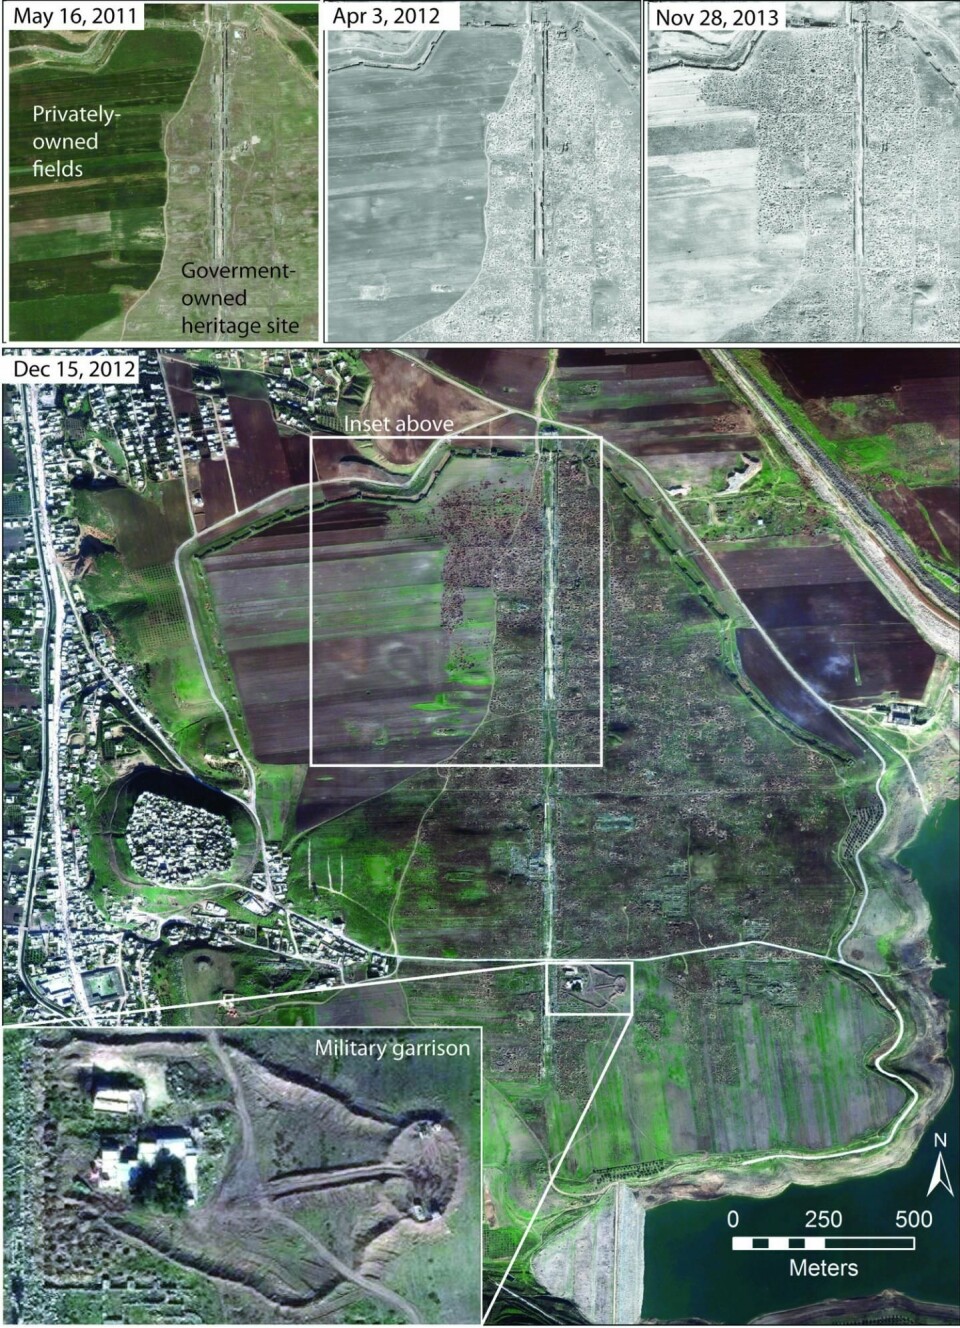 Bildet viser Apamea-området sett fra satellitt. Bildene øverst viser utviklingen fra 2012 til 2013, og du kan tydelig se hvordan utgravningene har bredd seg utover åkrene som ligger i nærheten. (Foto: Digital Globe 2015)